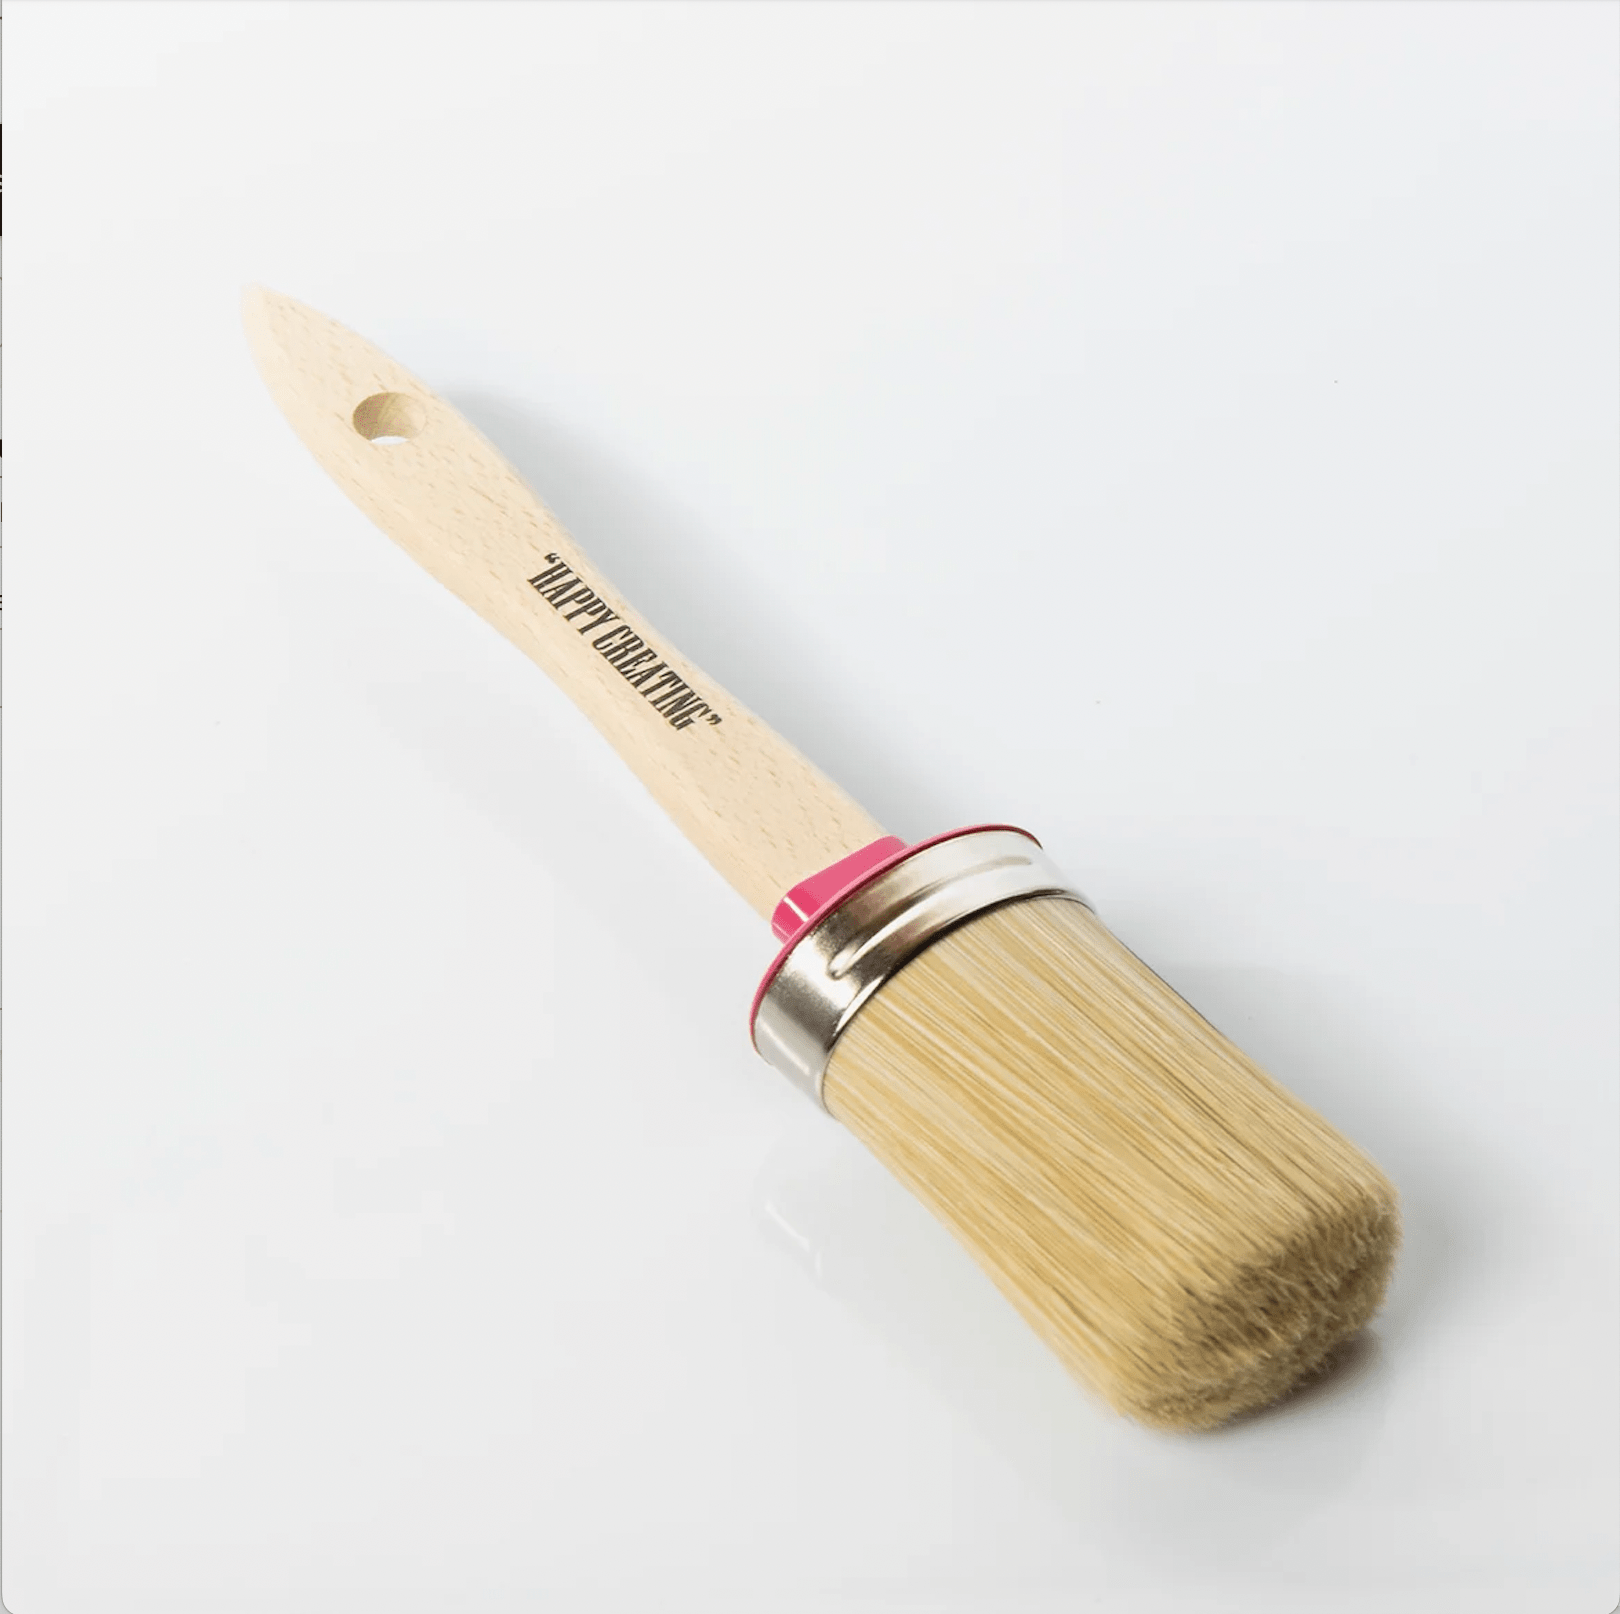 Natural Bristle Paint Brush Essentials Dixie Belle Paint La Petite